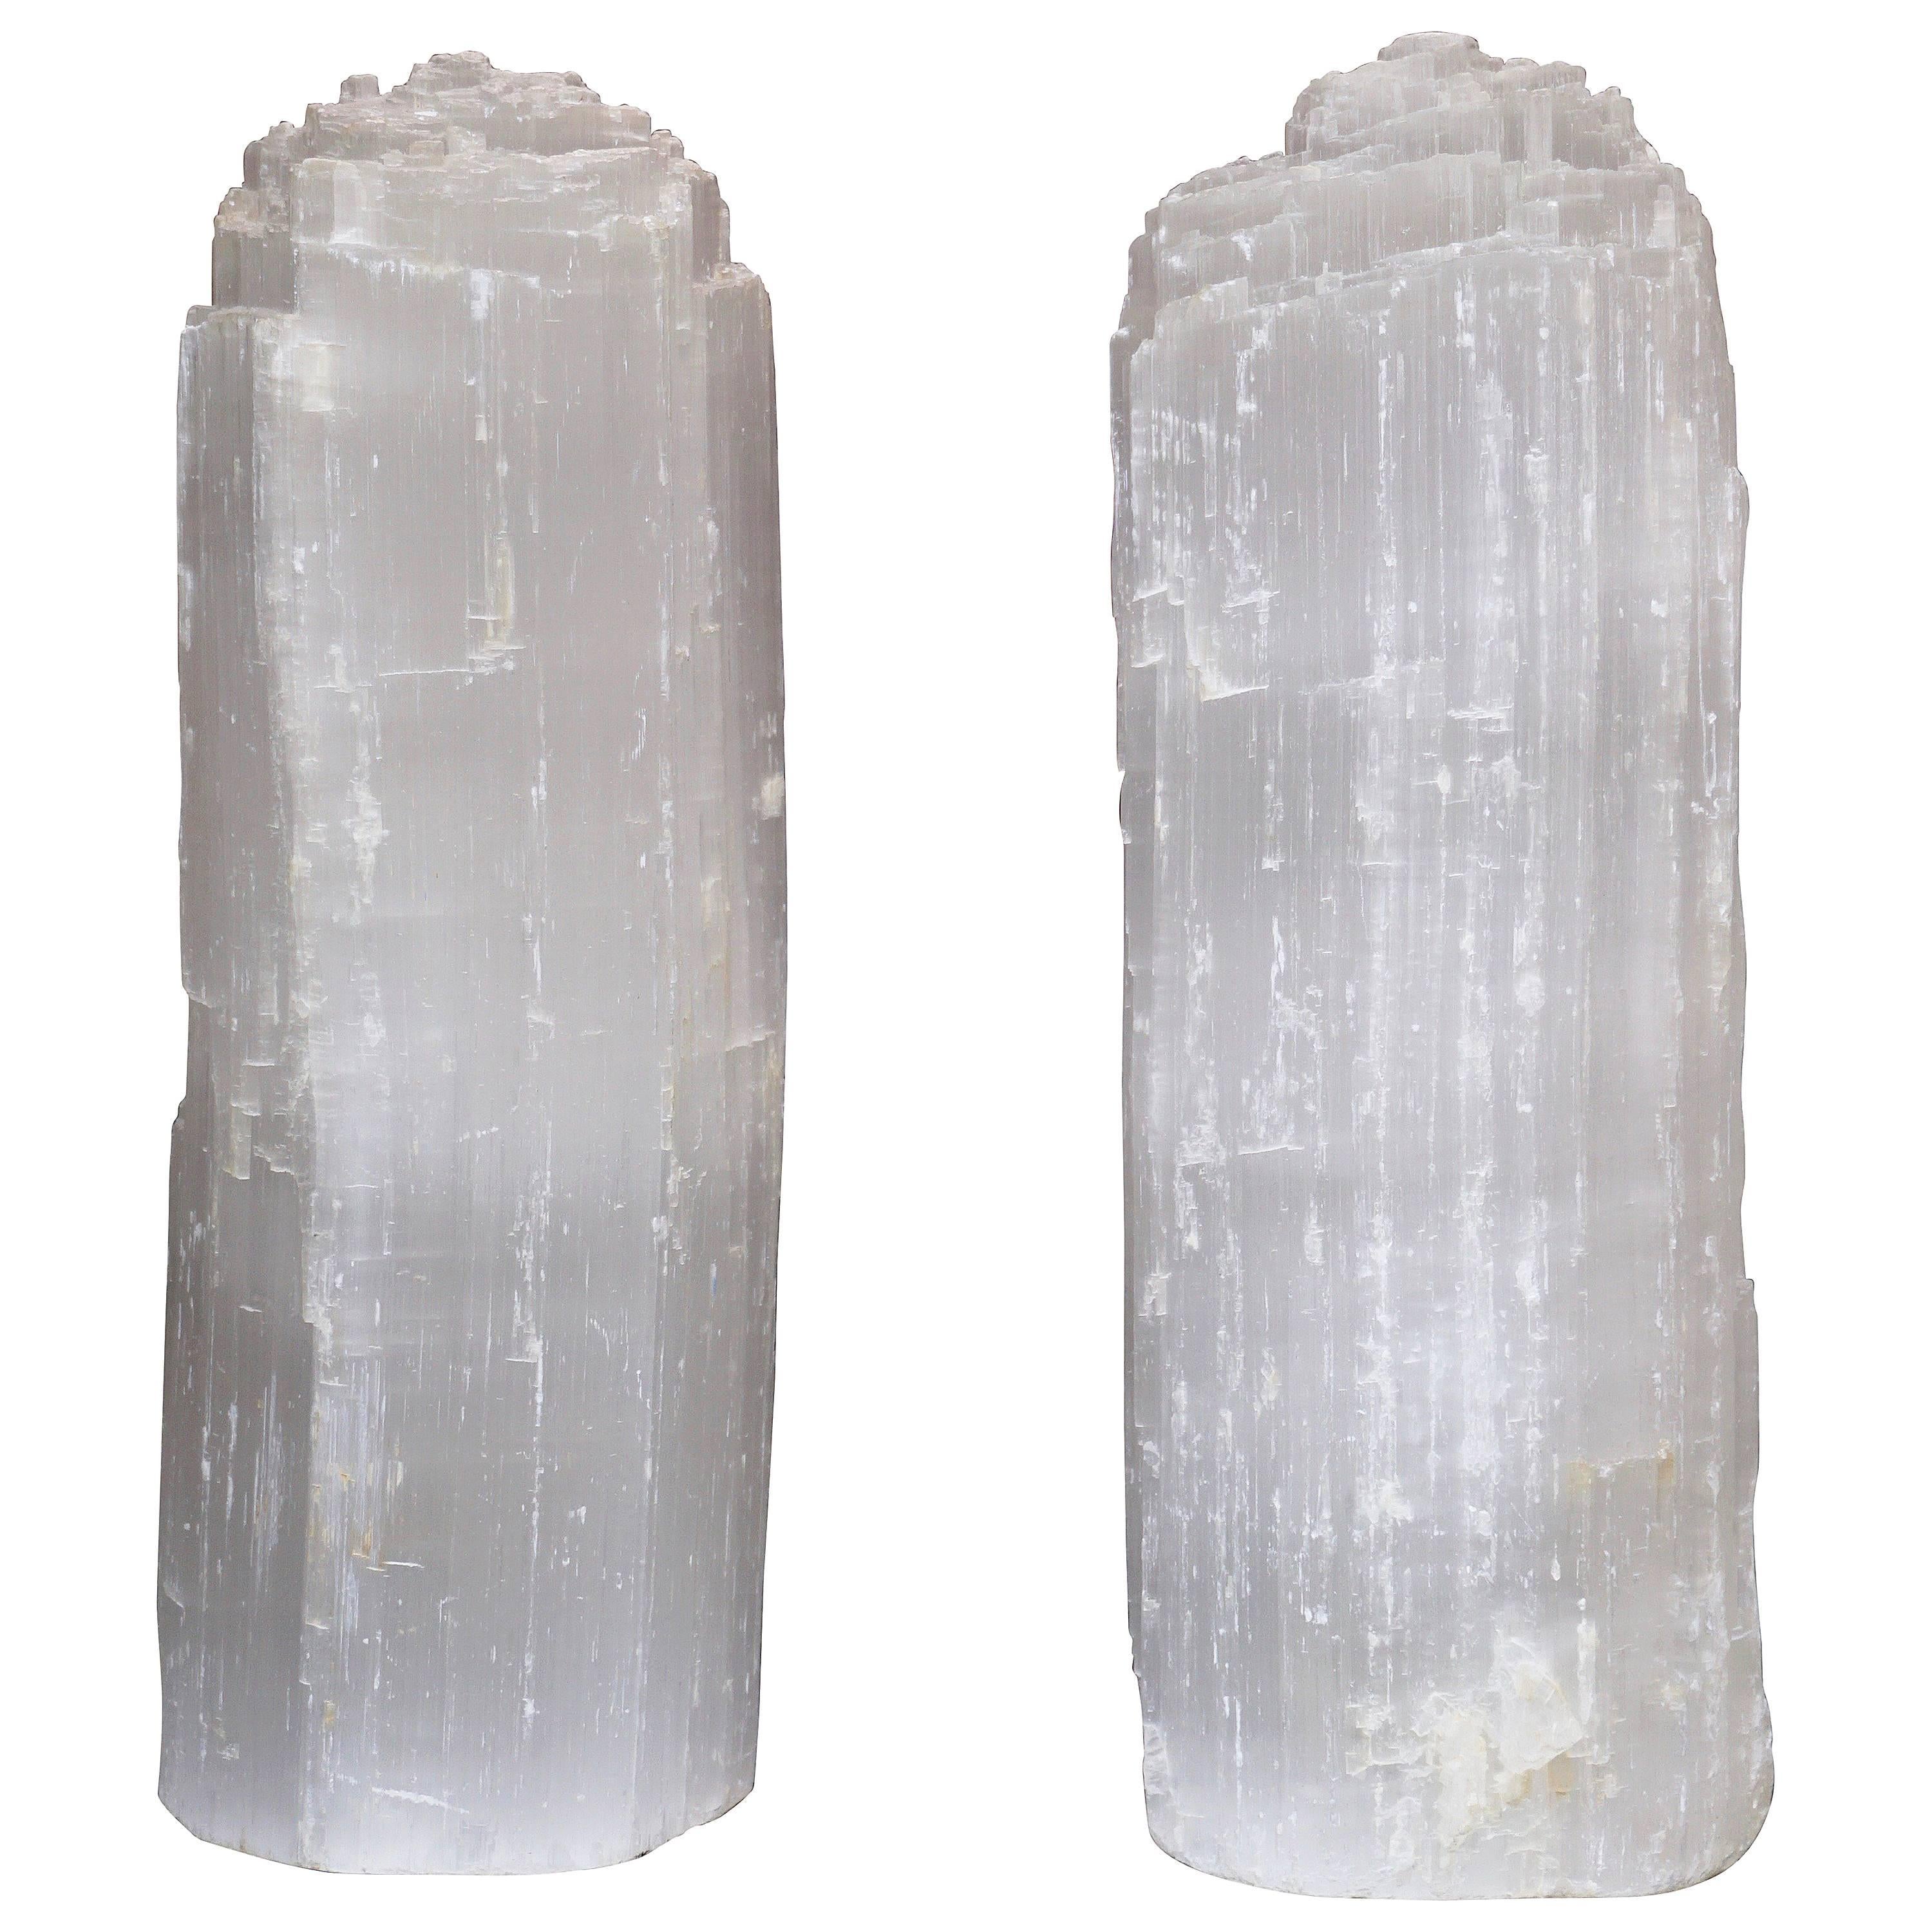 One Selenit Bergkristall Quarz-Tischlampe